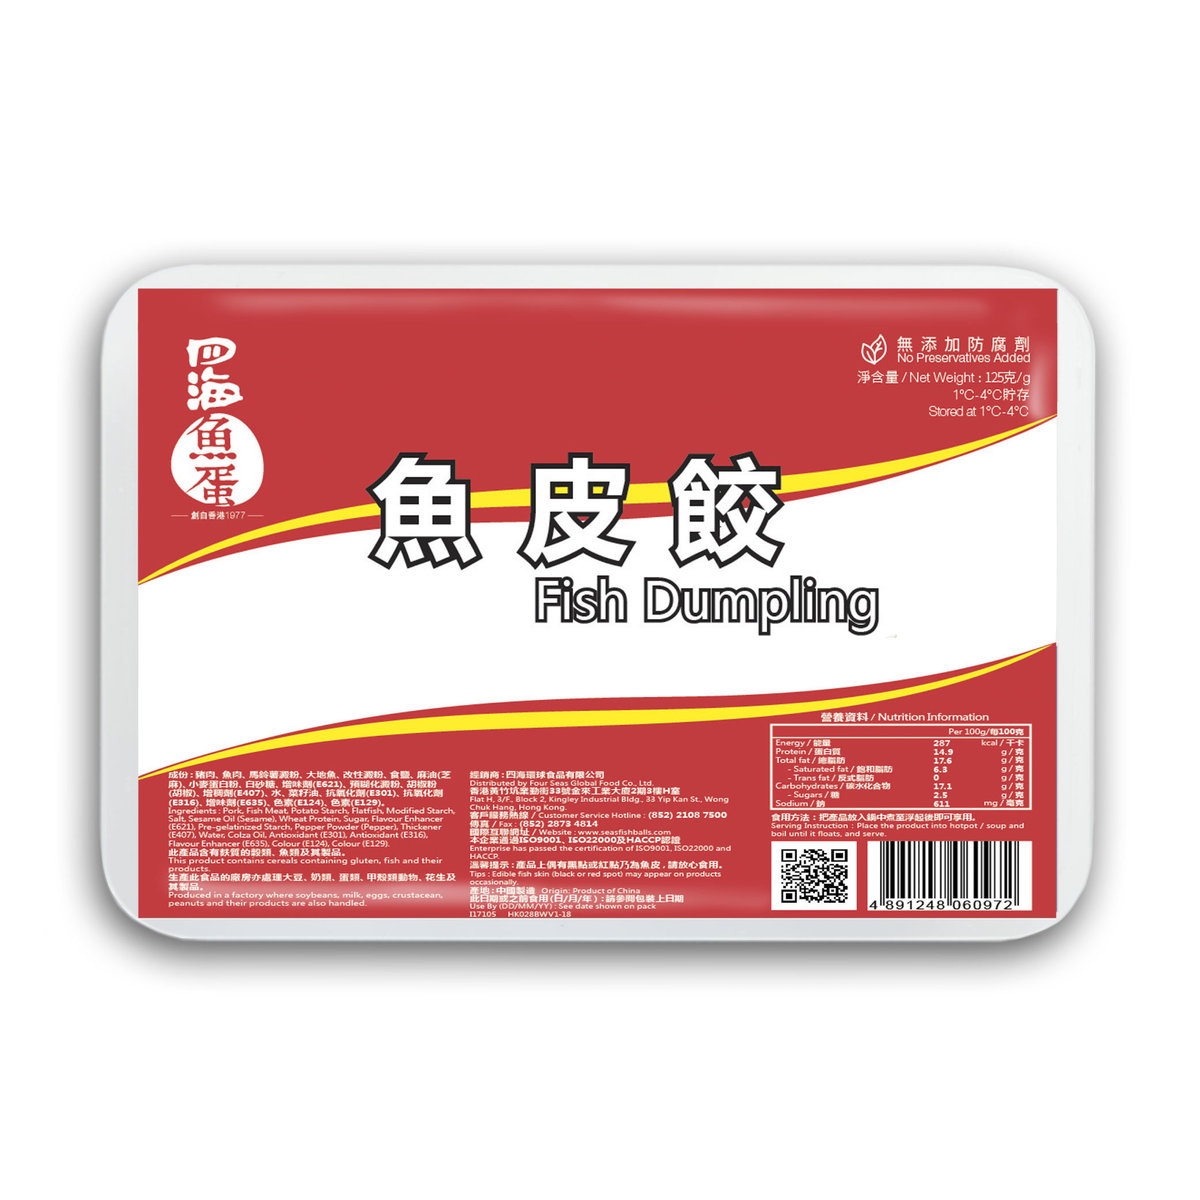 四海魚蛋| 魚皮餃125G(冷凍) | Hktvmall 香港最大網購平台